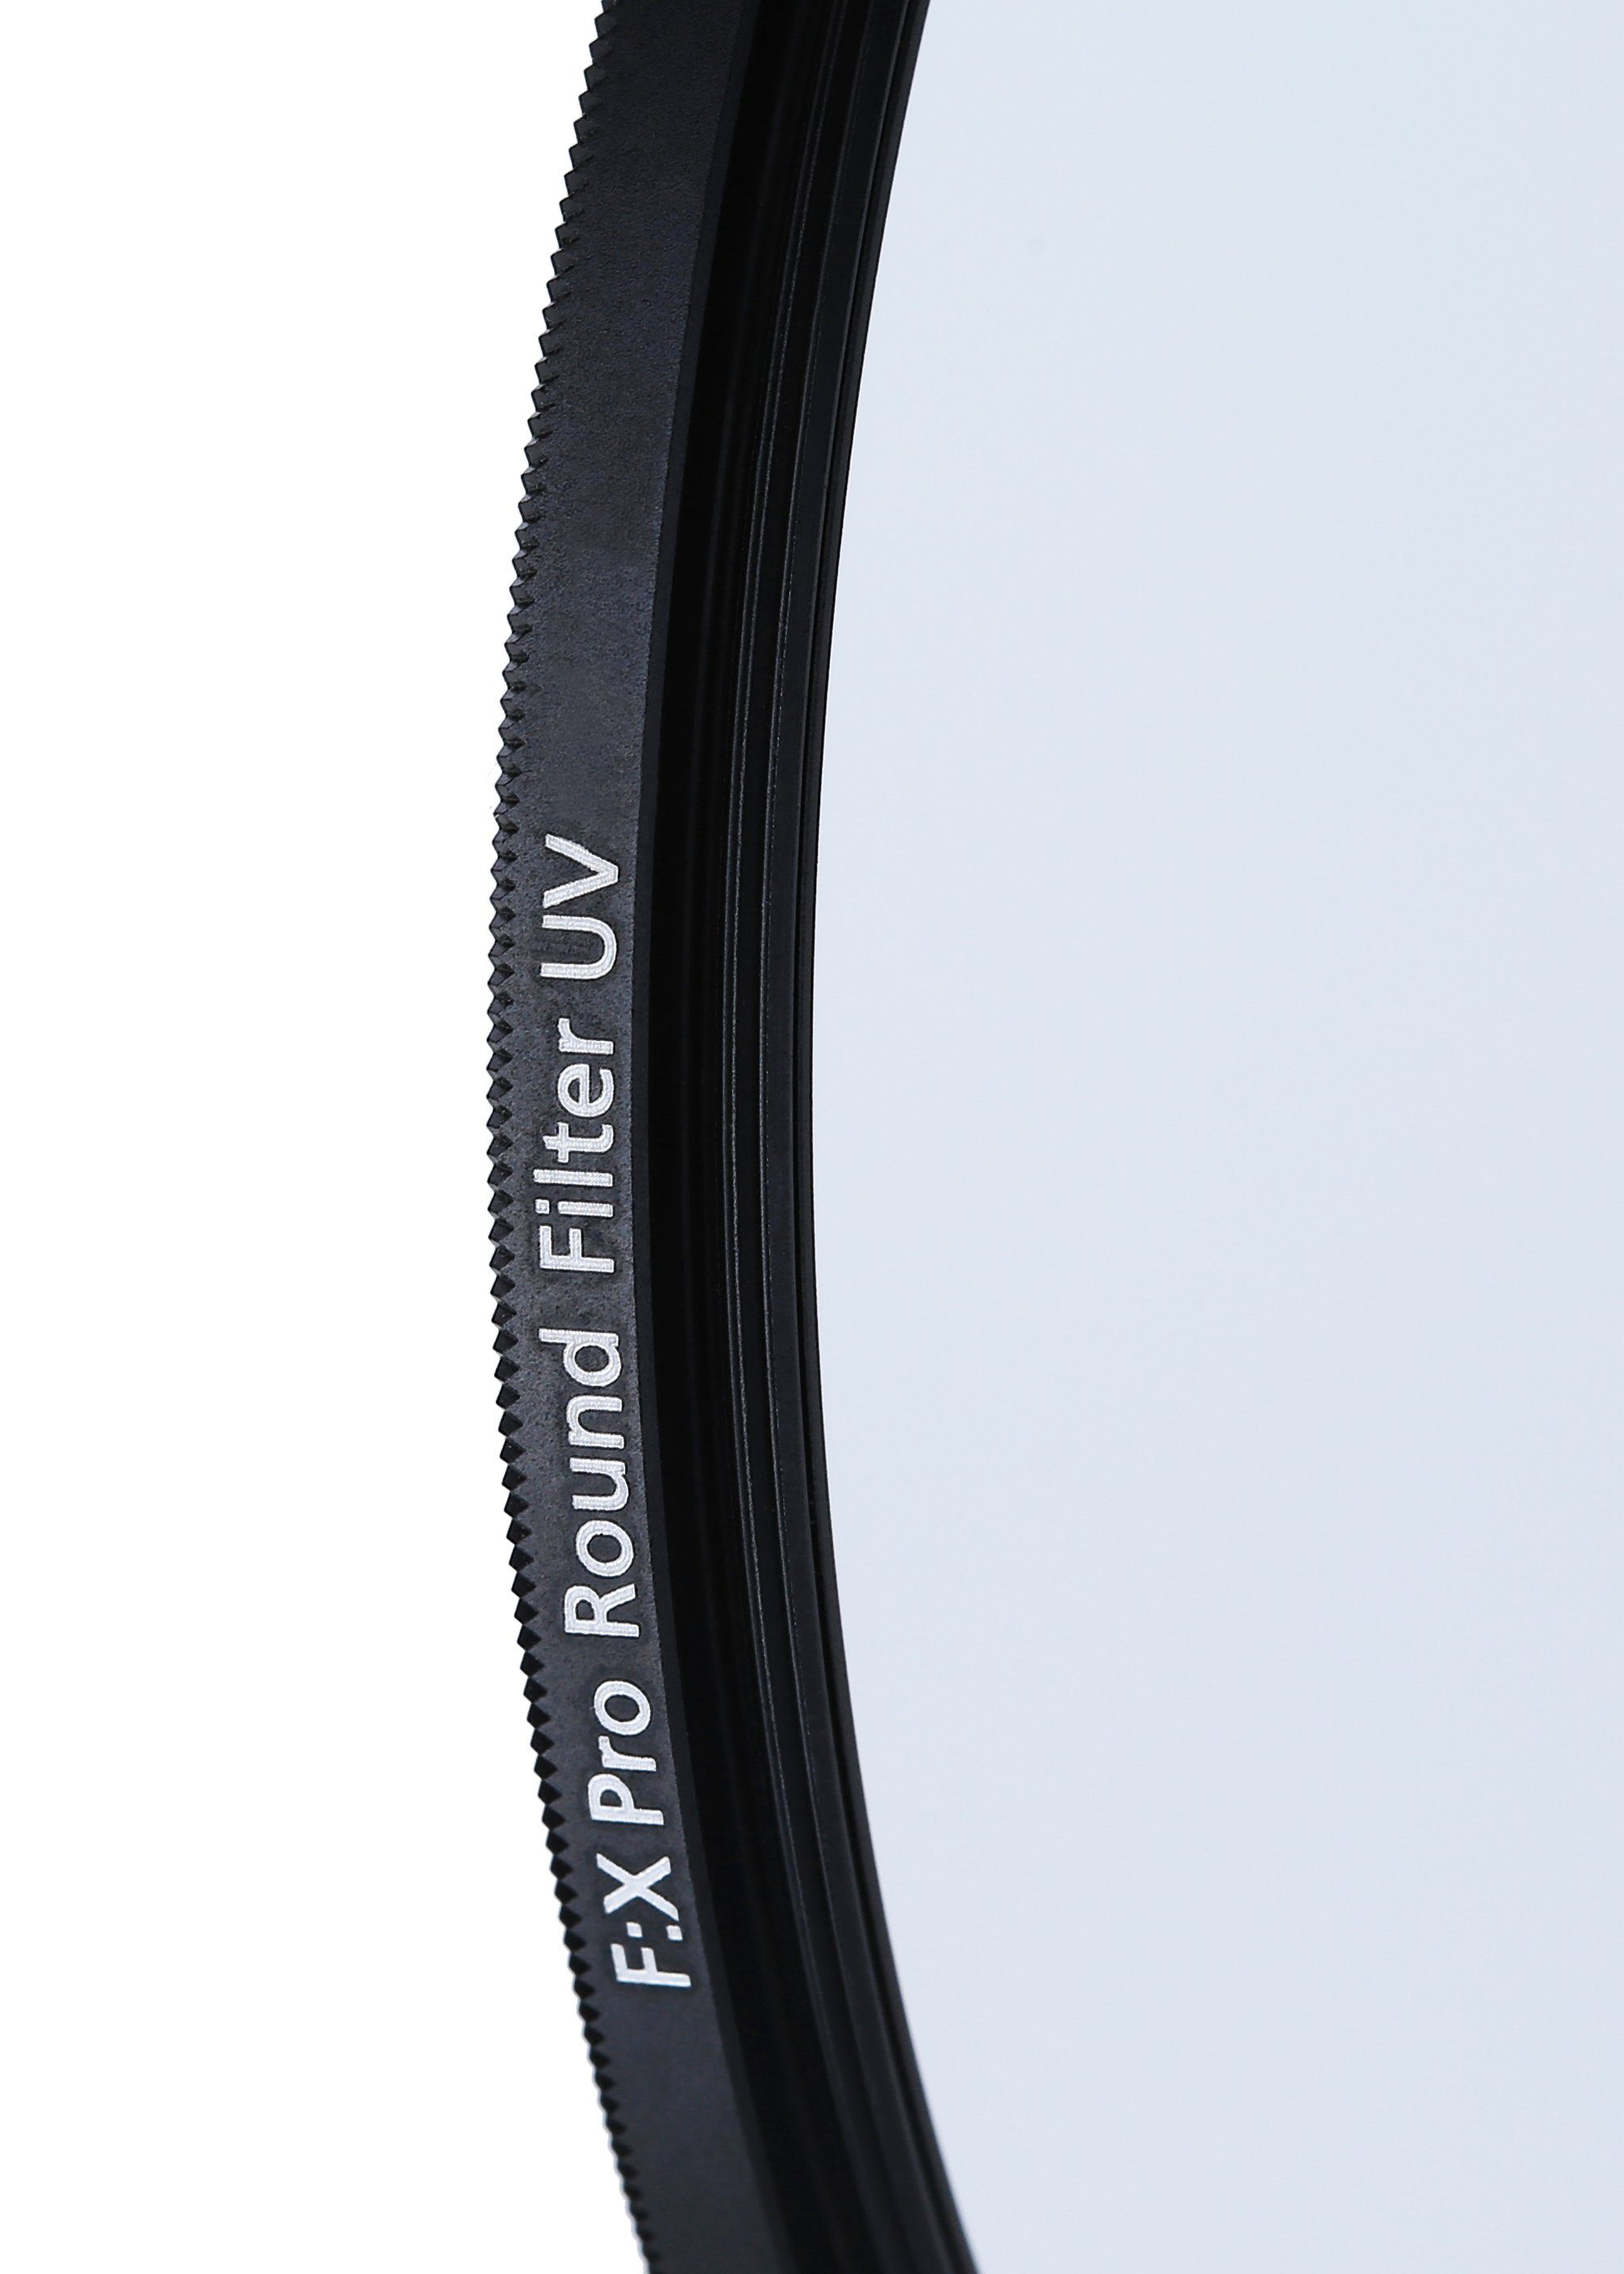 Rollei Rollei F:X kratzfestem Pro UV Filter (aus Glas) 77 mm Objektivzubehör